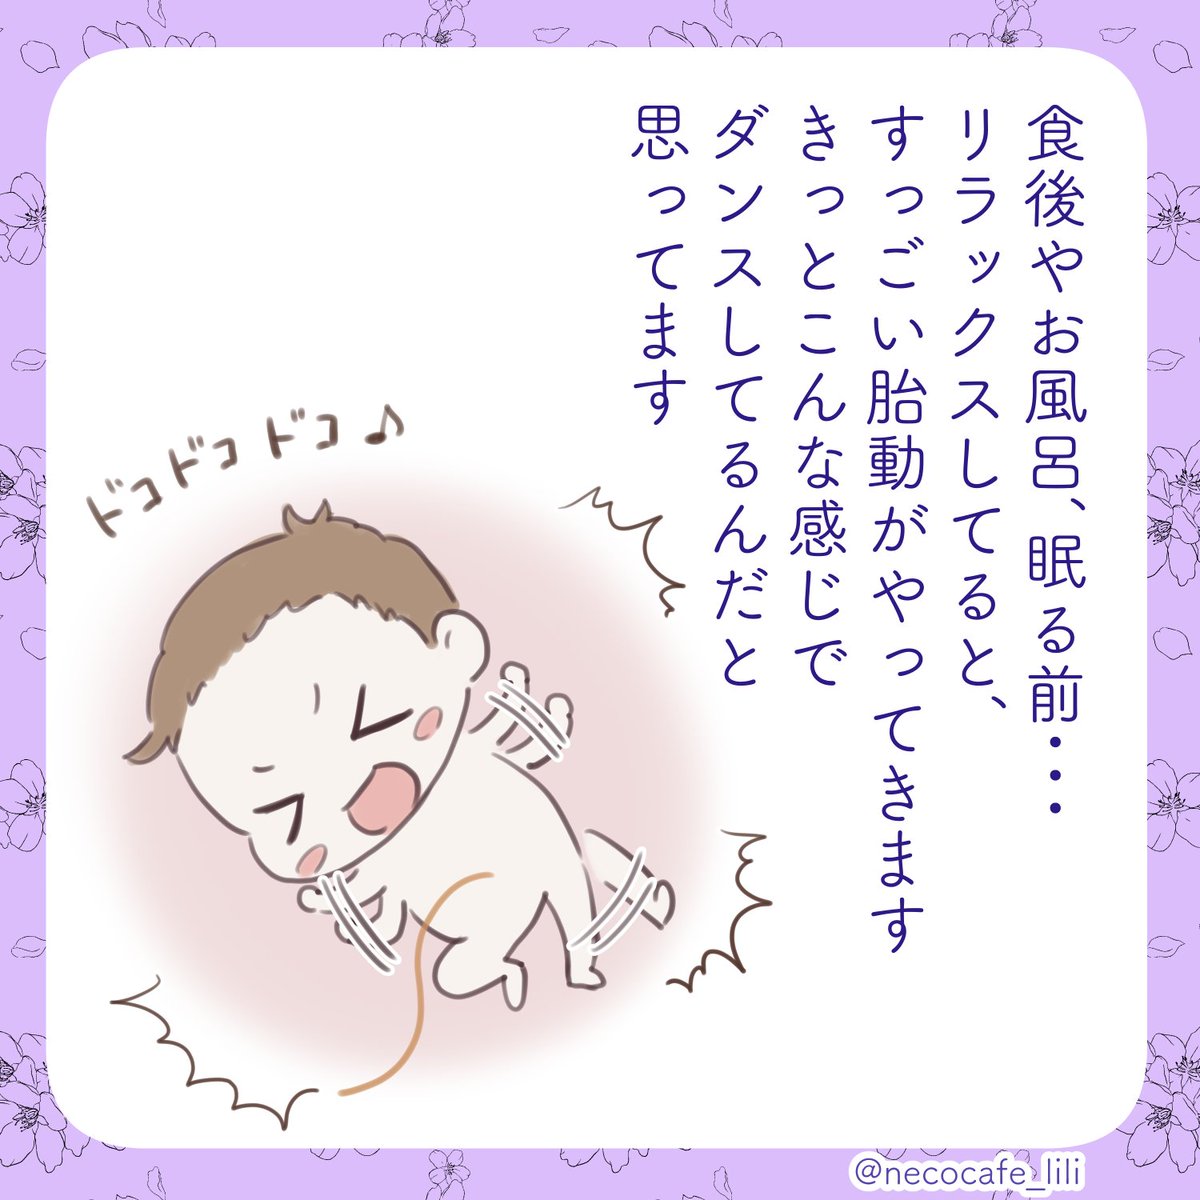 妊娠日記(2/4)
#育児漫画 #エッセイ漫画 